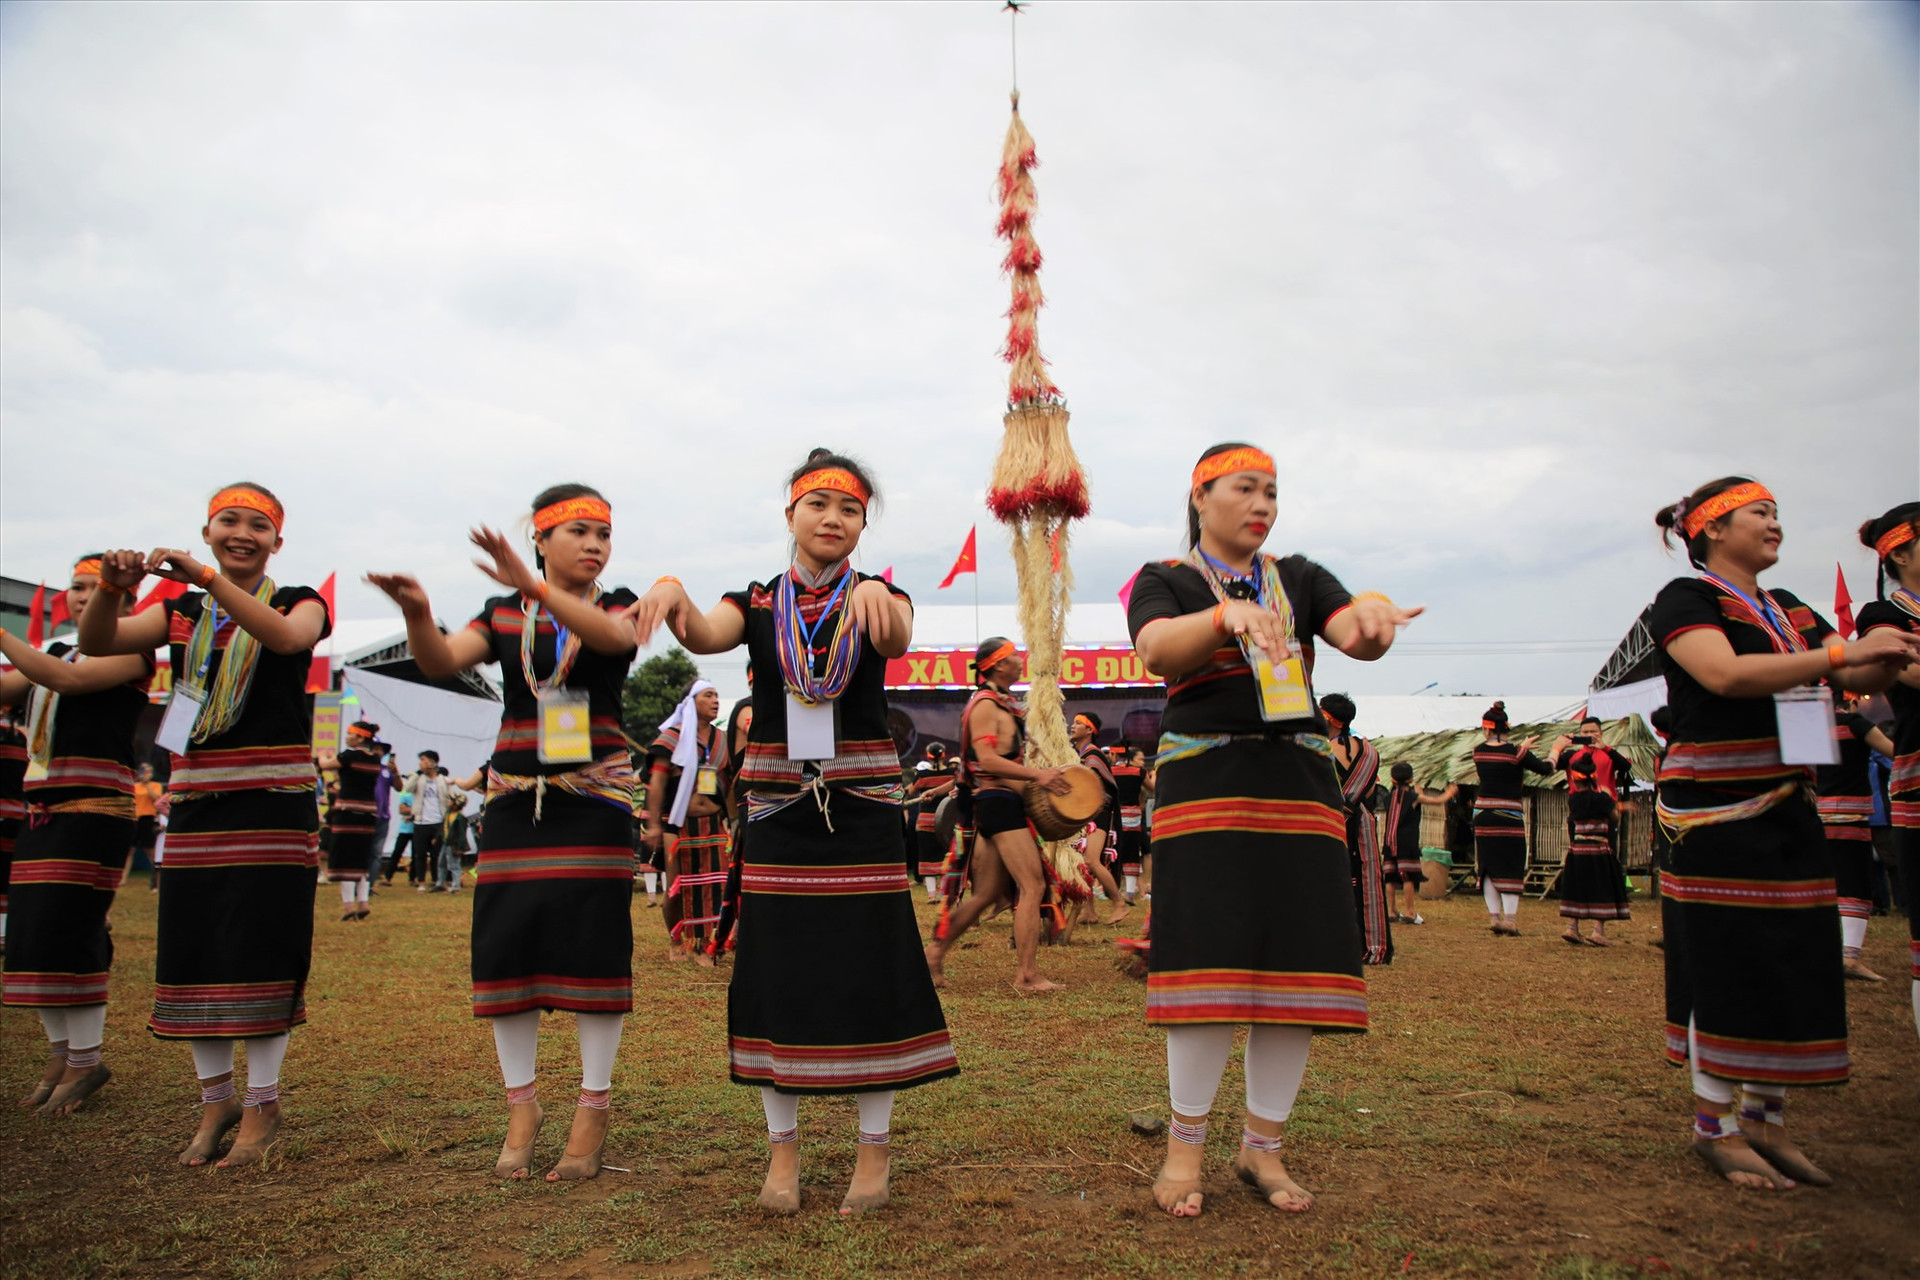 Giữa không gian đầy sắc màu truyền thống, điệu múa Bh'noong trở thành một trong các điểm nhấn của ngày hội. Ảnh: N.C